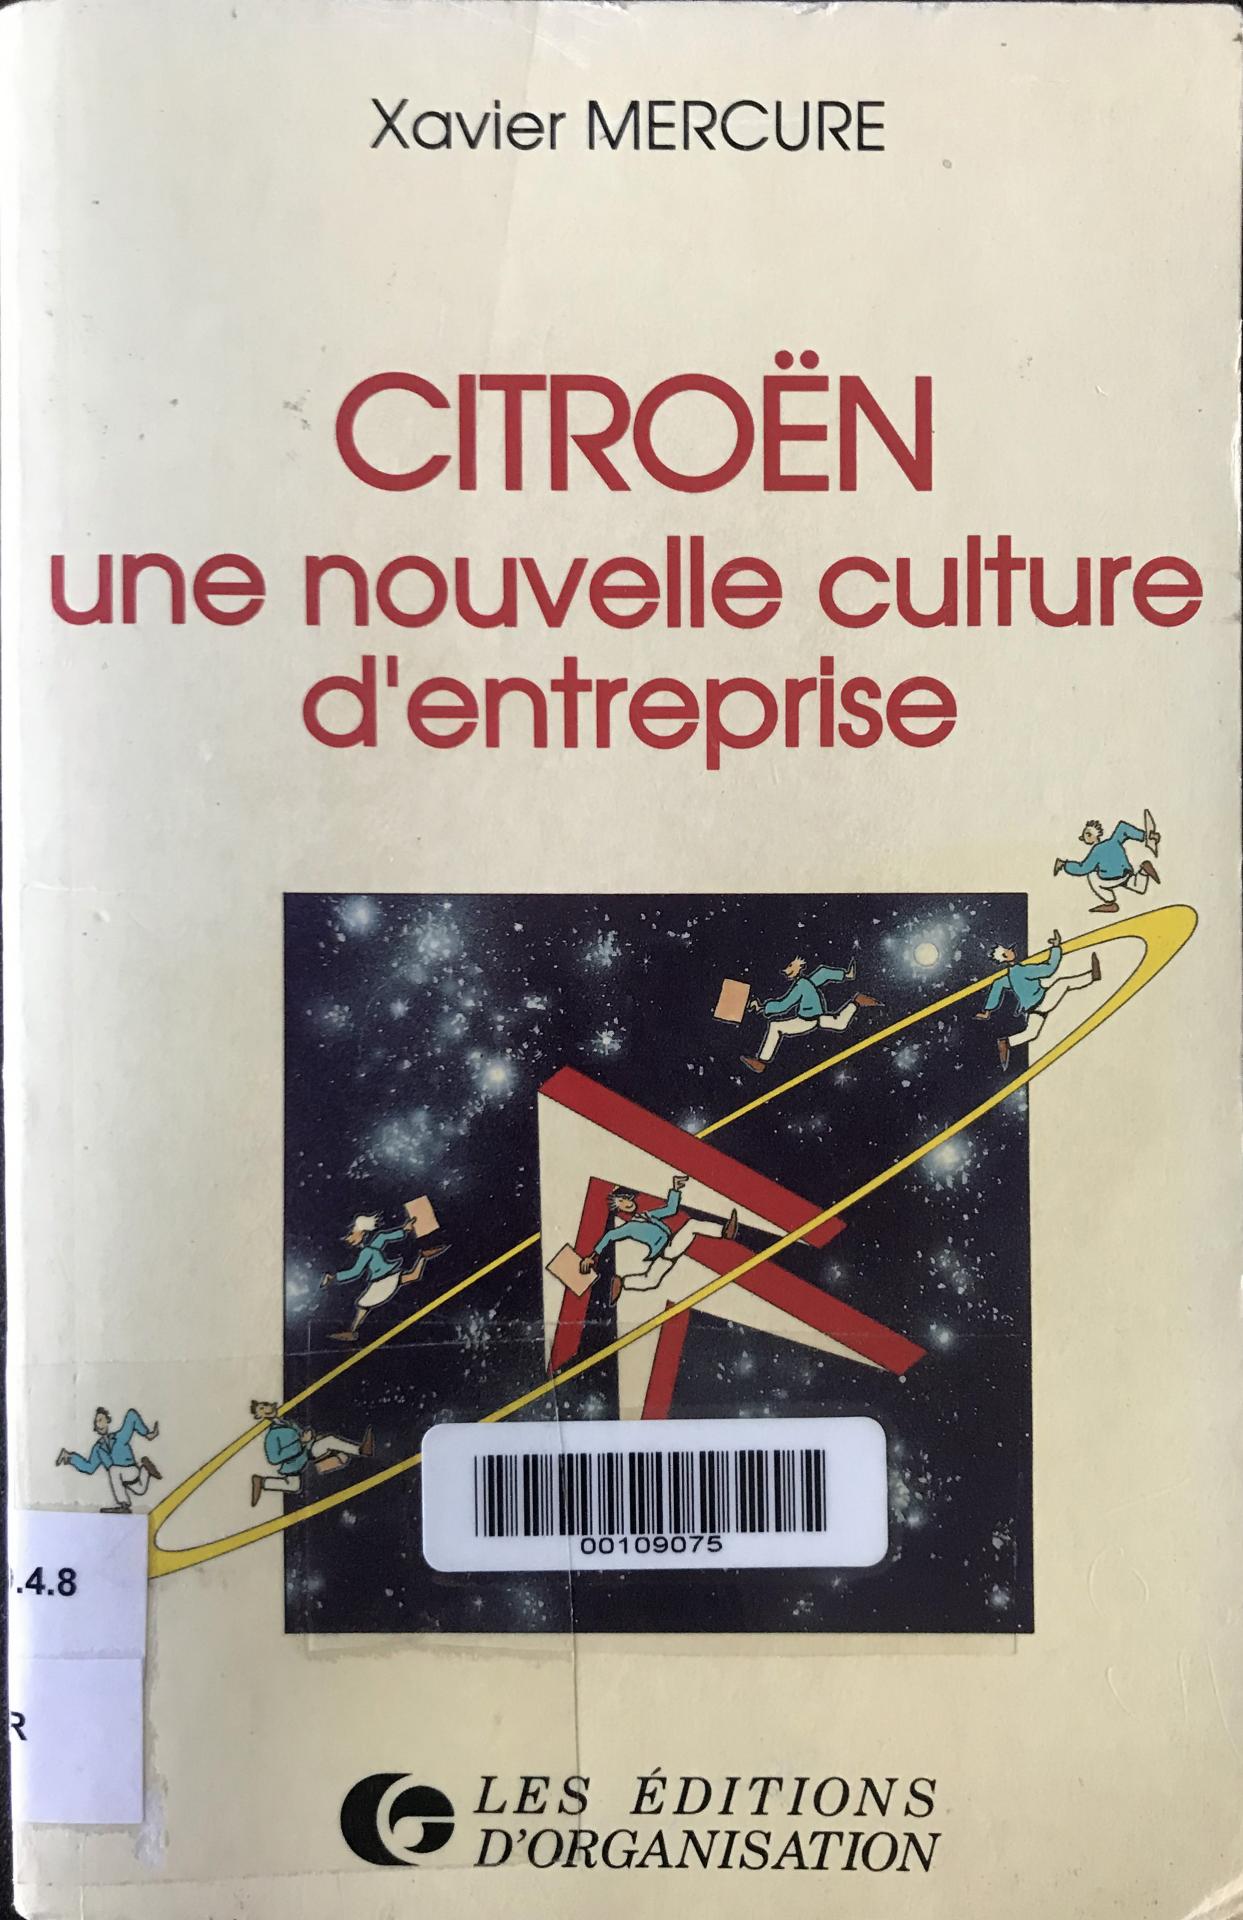 1989 Citroën une nouvelle culture d'entreprise